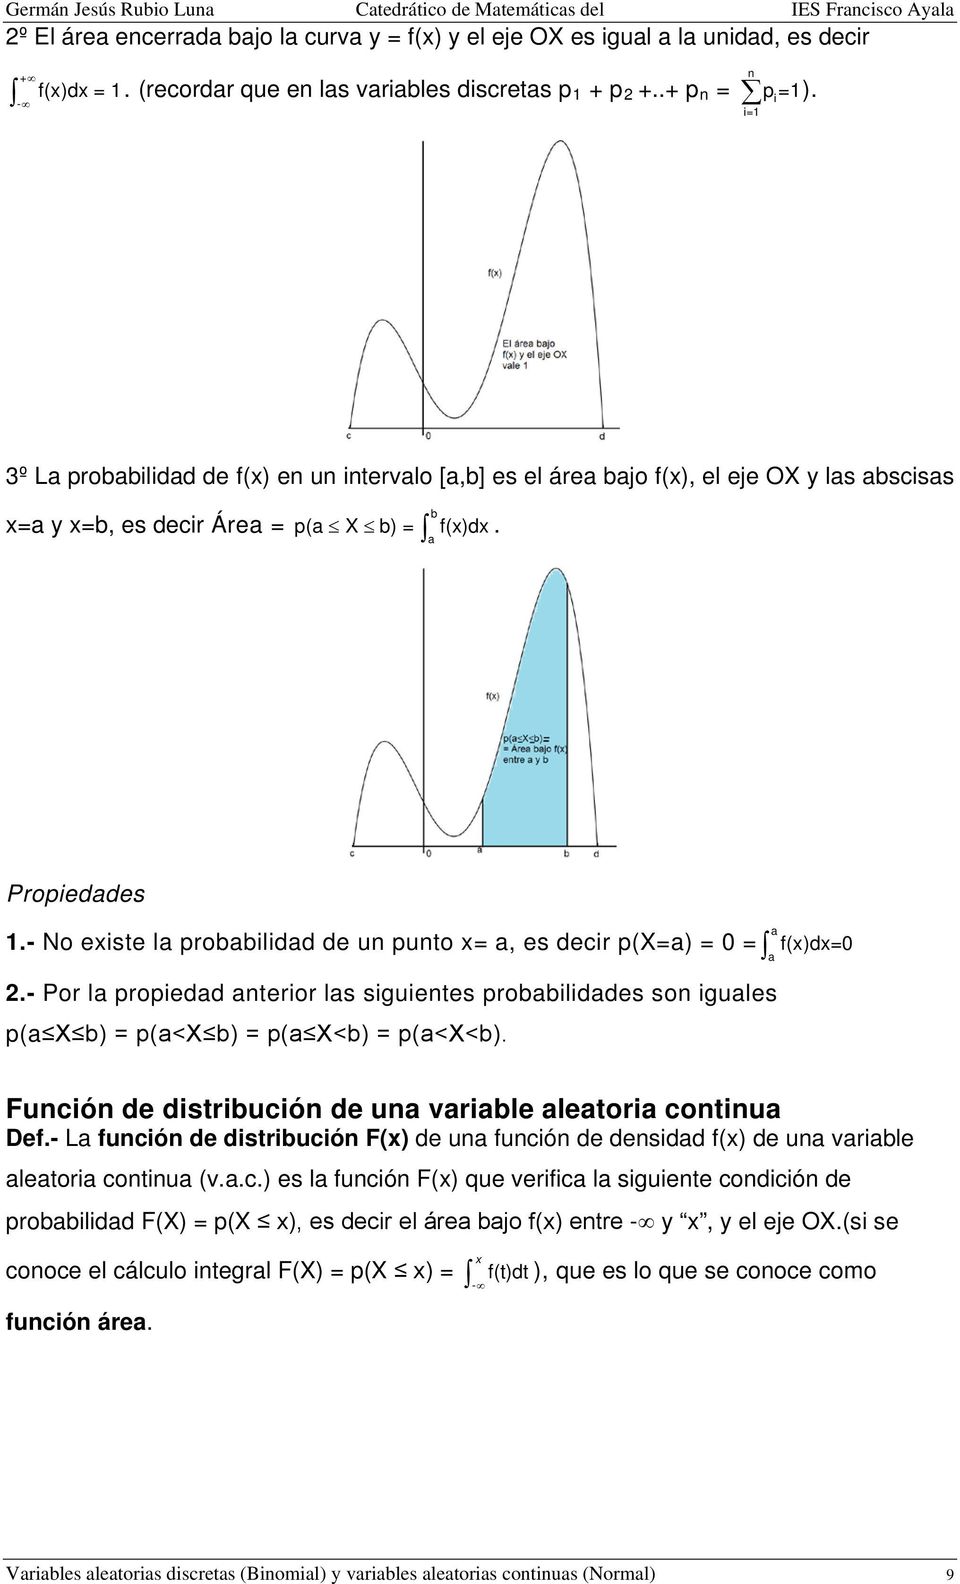 - No existe la probabilidad de u puto x= a, es decir p(x=a) = 0 = a f(x)dx=0 a 2.- Por la propiedad aterior las siguietes probabilidades so iguales p(a X b) = p(a<x b) = p(a X<b) = p(a<x<b).